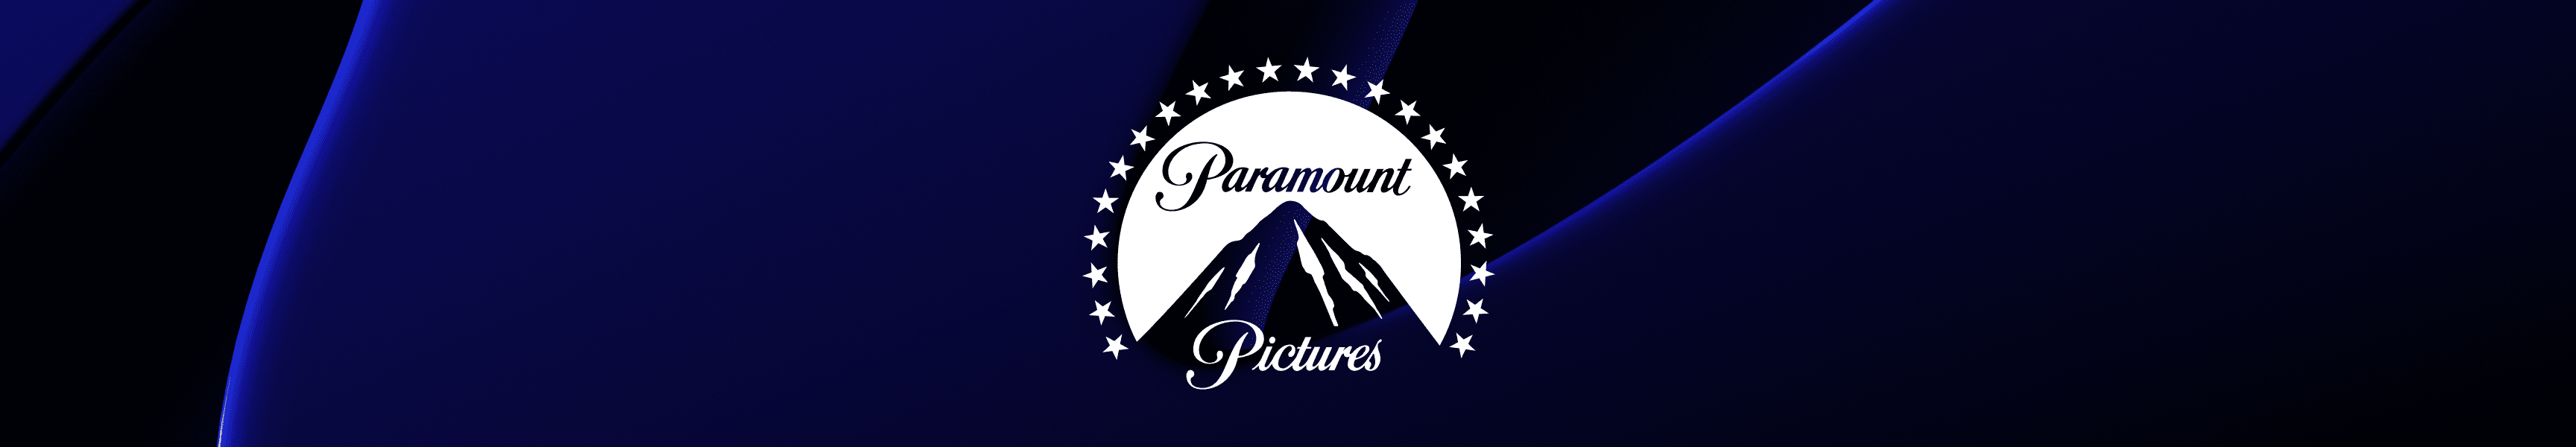 Paramount Pictures Vasos de cristal